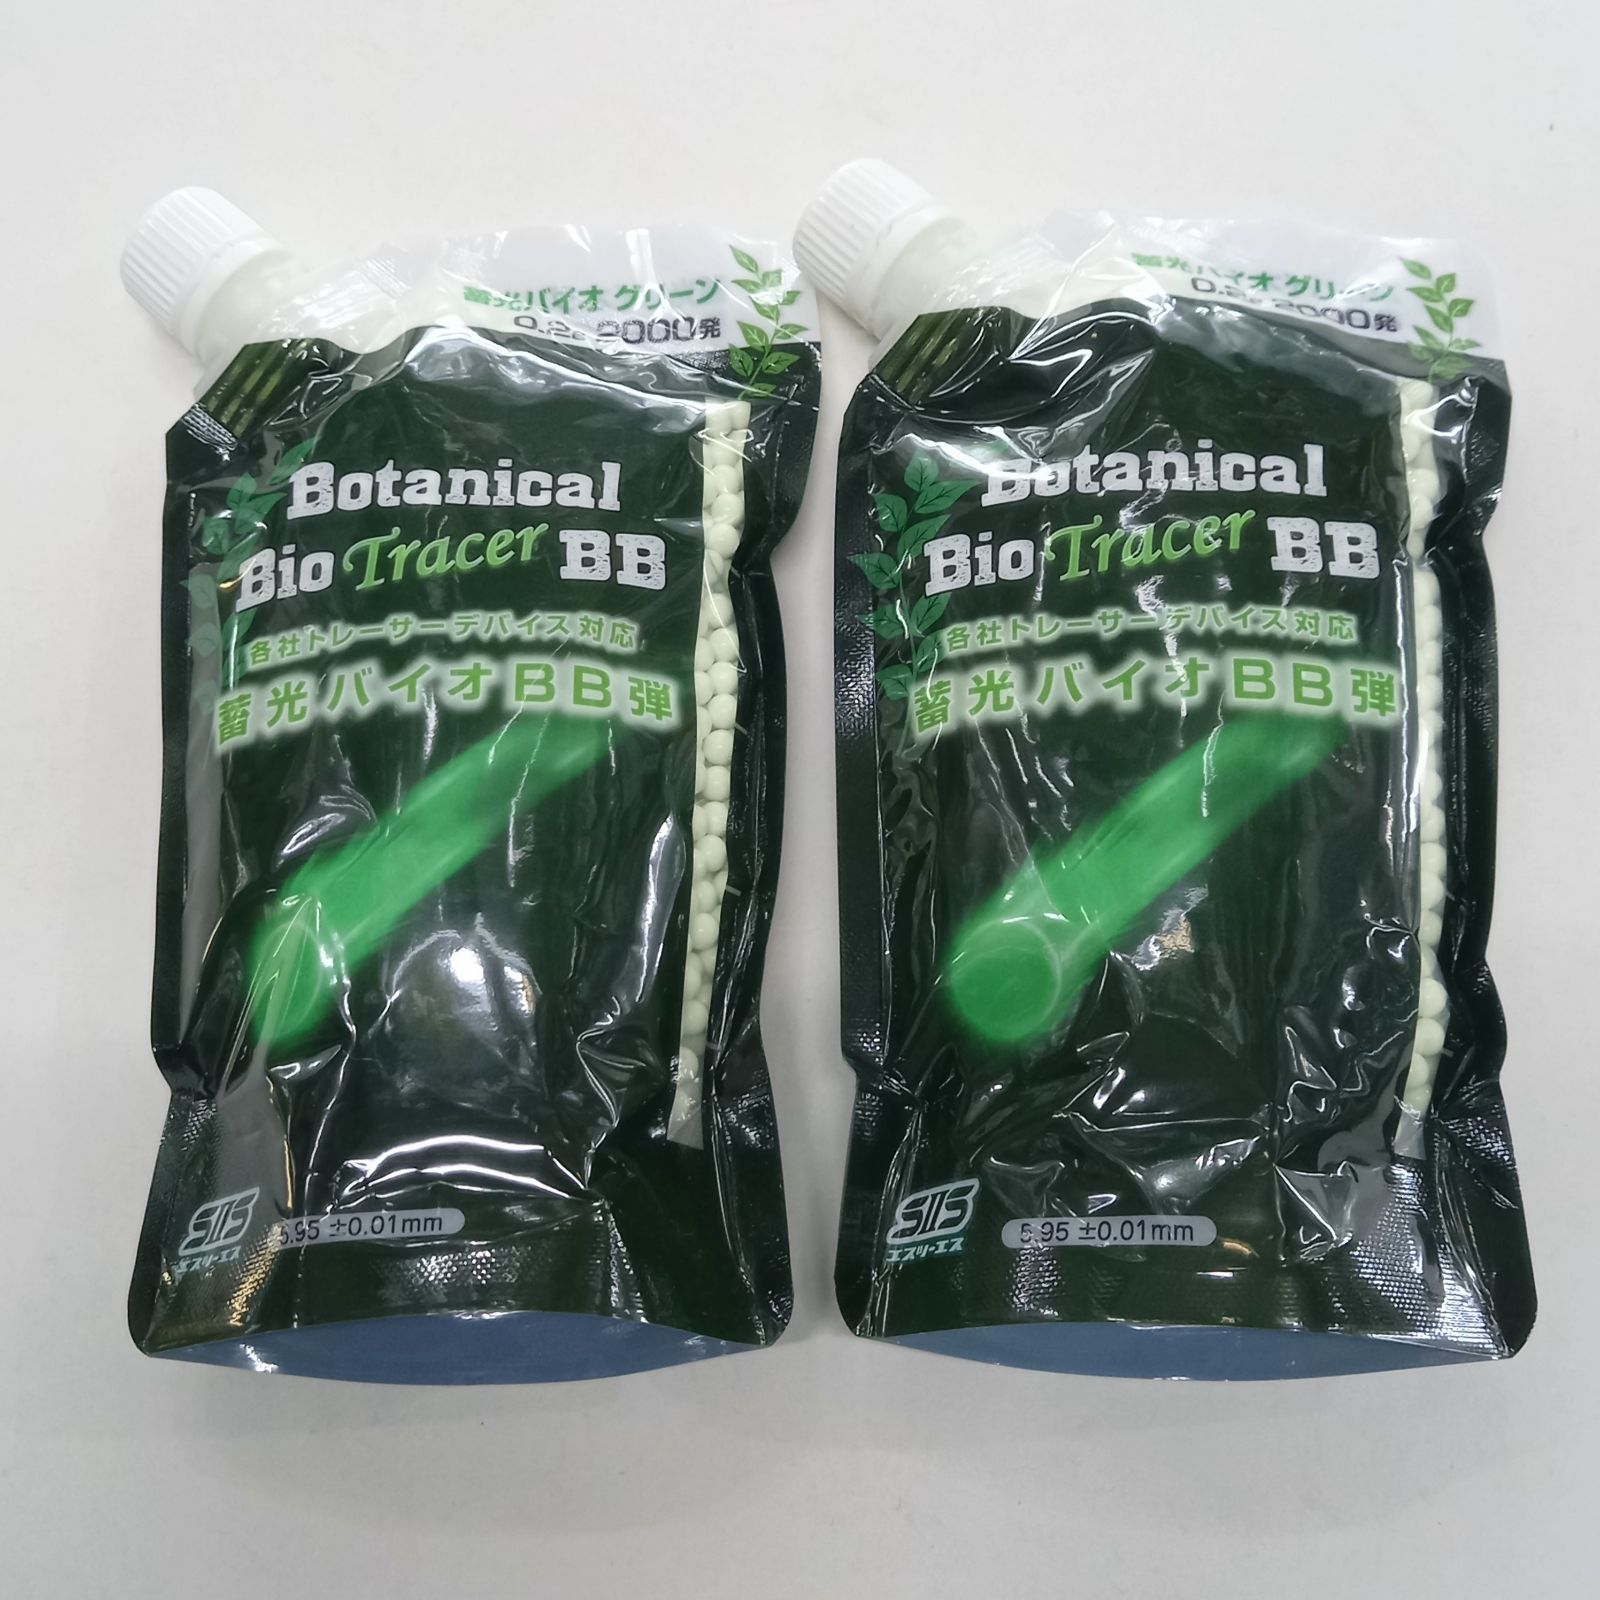 BLS 高品質PLA バイオトレーサーBB弾 0.28g 3571発(1kg) グリーン◇グリーン 蓄光 高精度BB弾 夜戦 サバゲ 植物由来樹脂 高 精度5.95mm±0.01